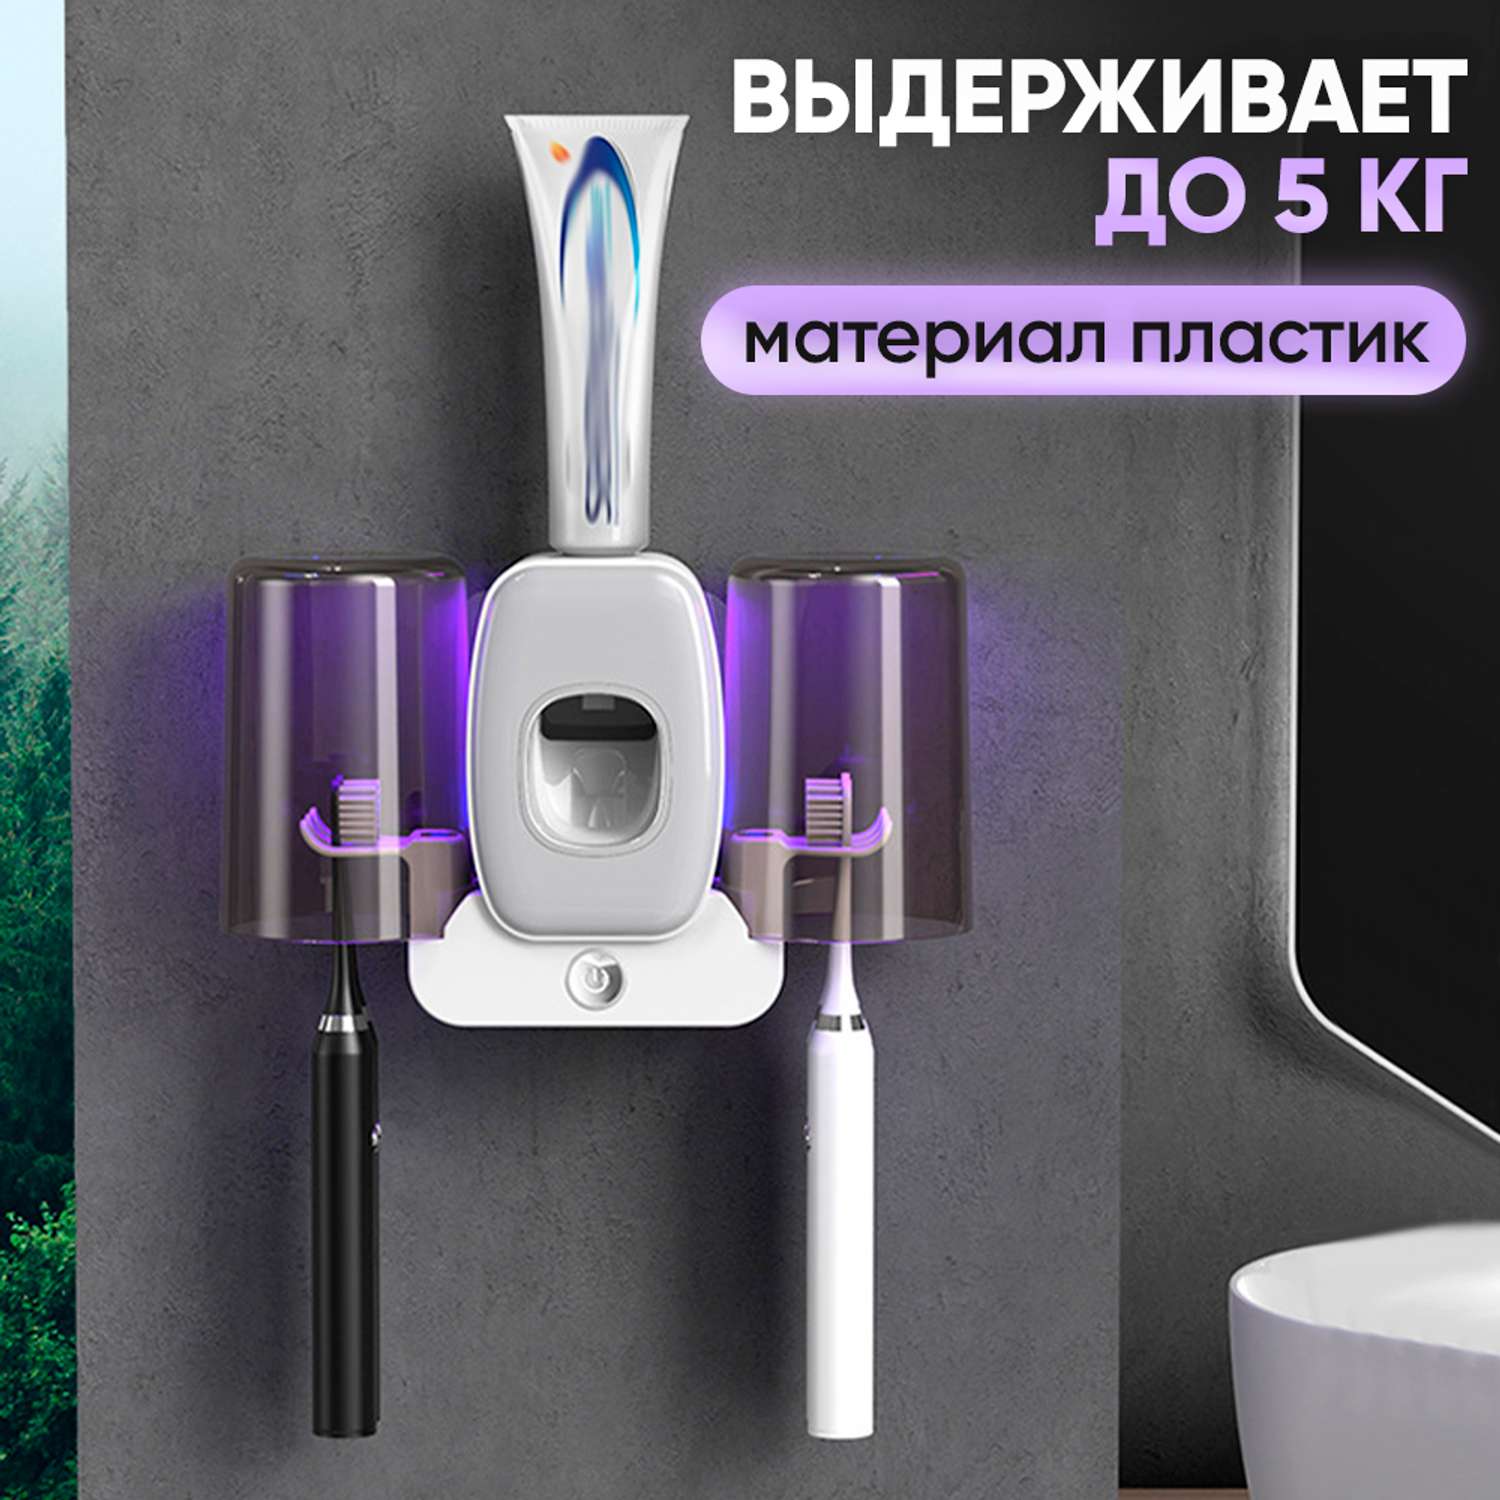 Дозаторы для ванной комнаты oqqi уф стерилизатор для зубных щеток - фото 4